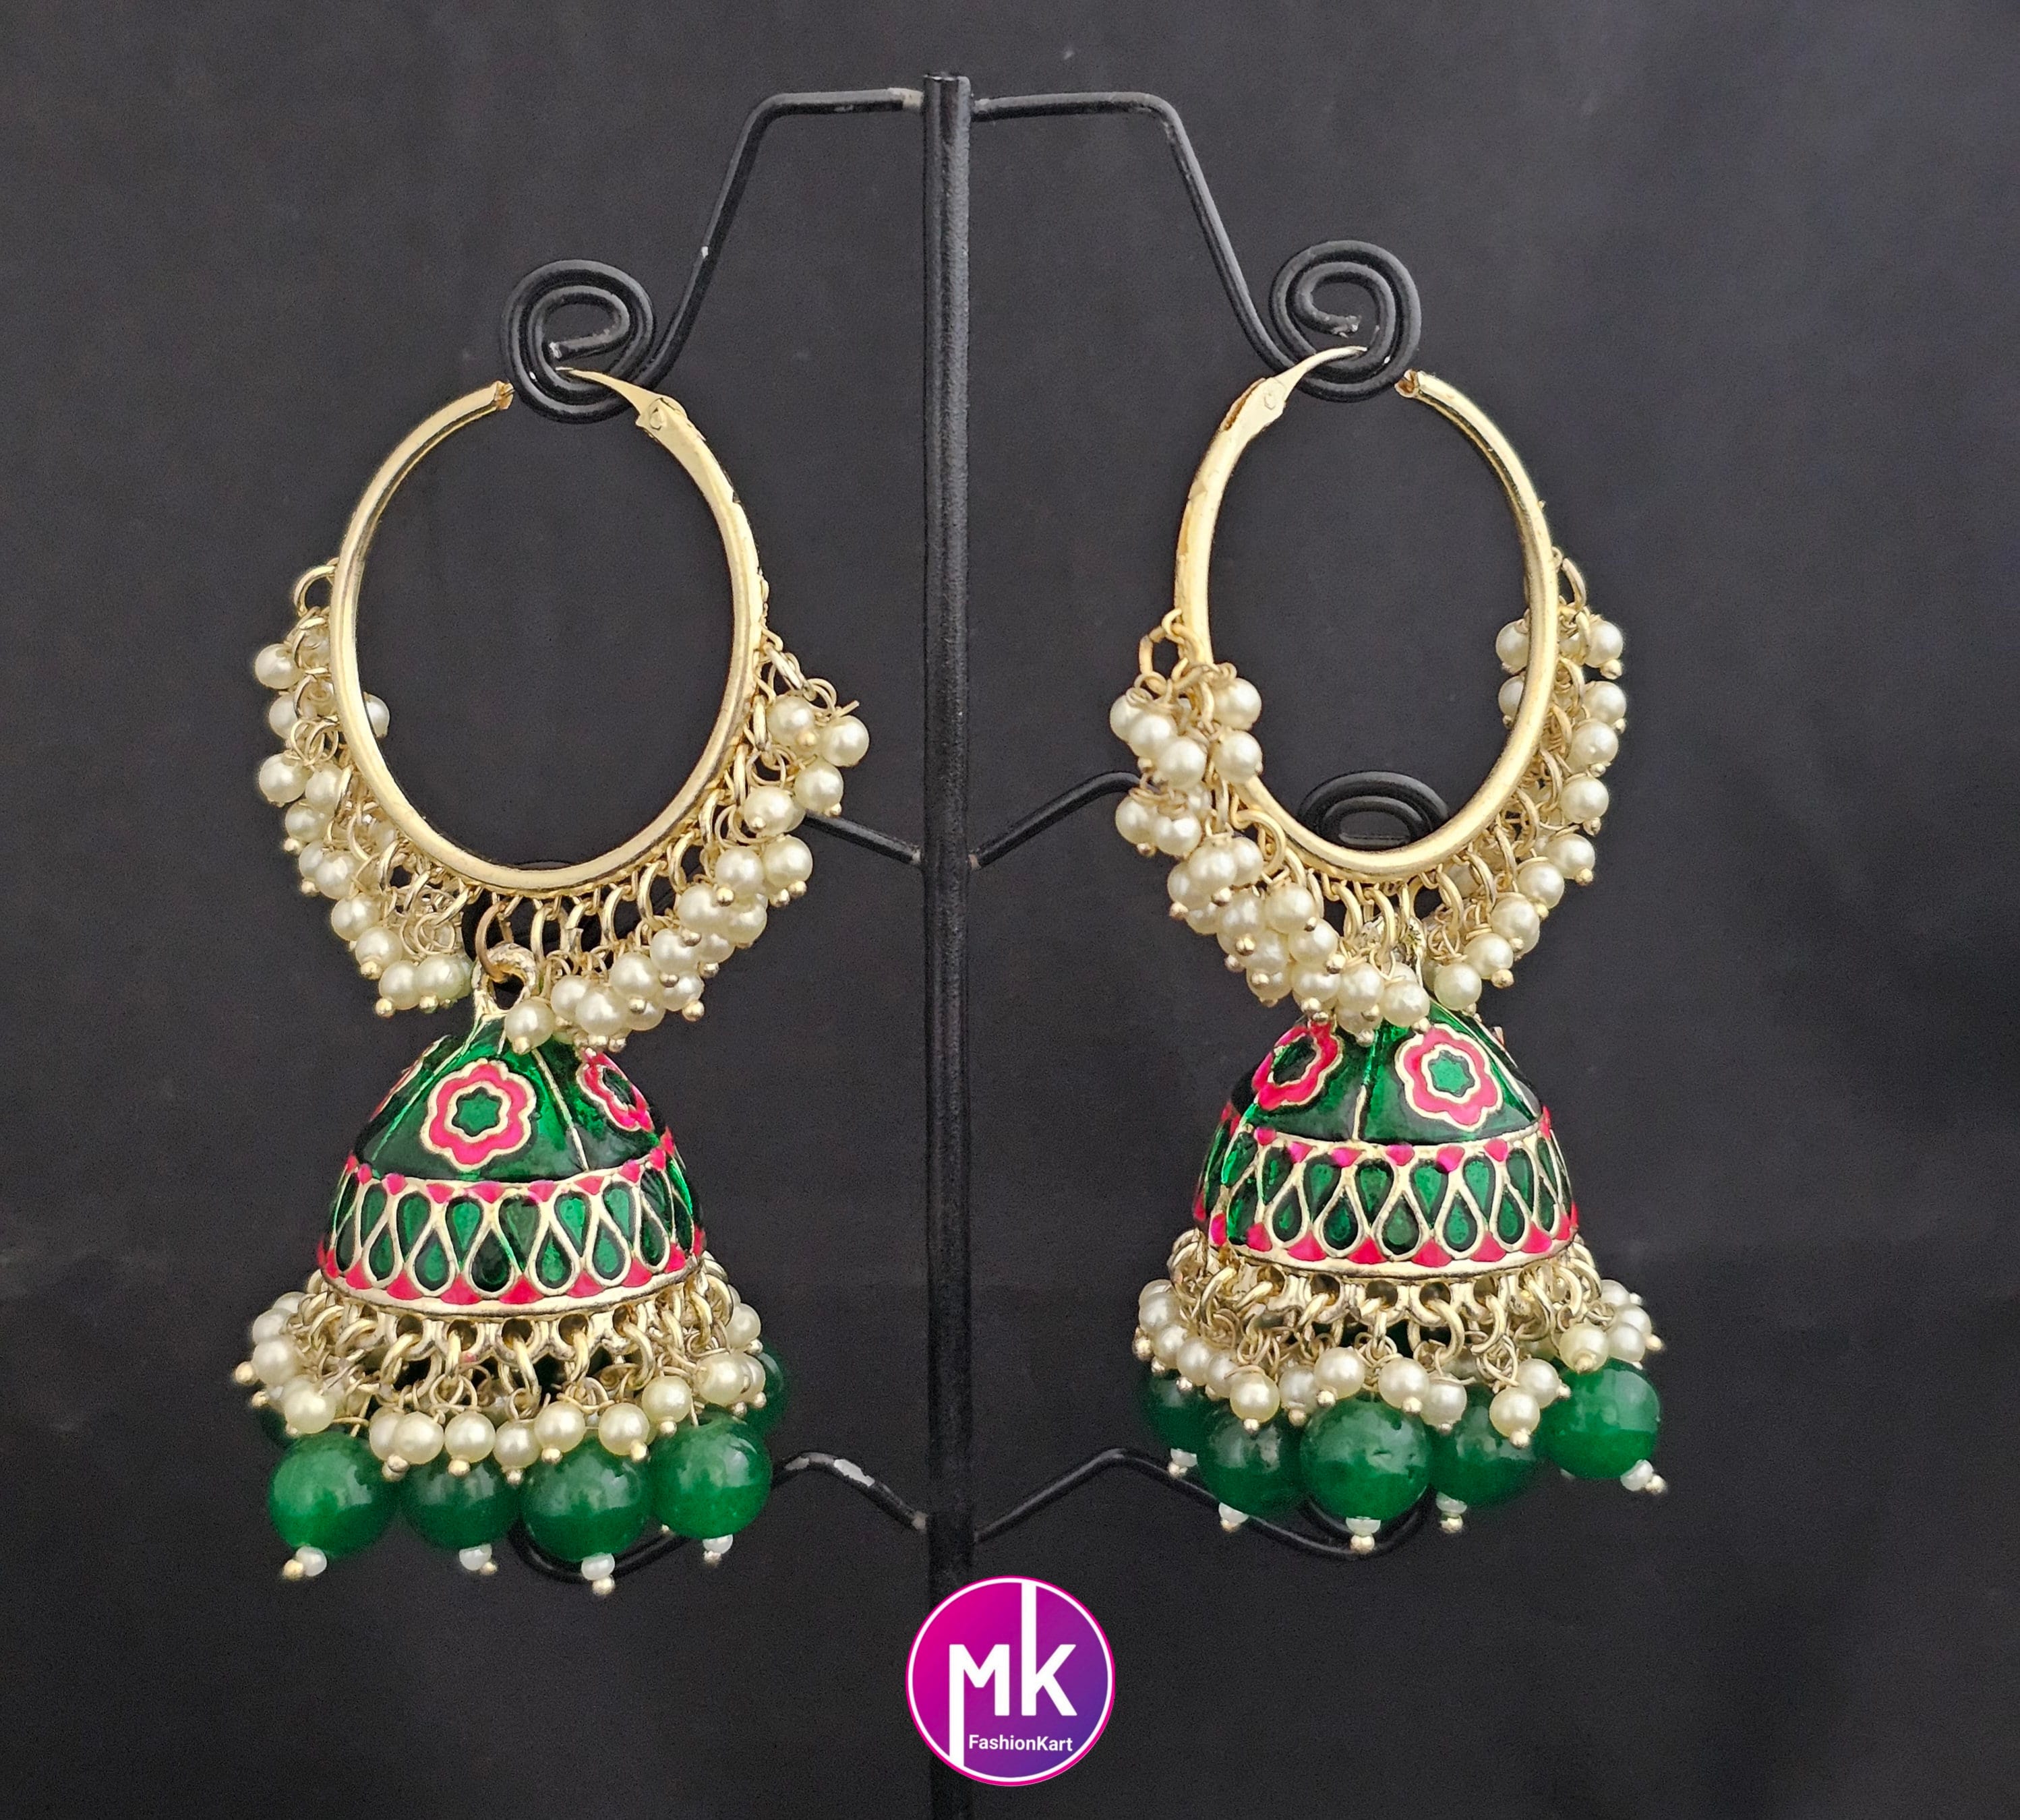 Bollywood Premium quality Big Meenakari Pearl Jhumka with bead hangings